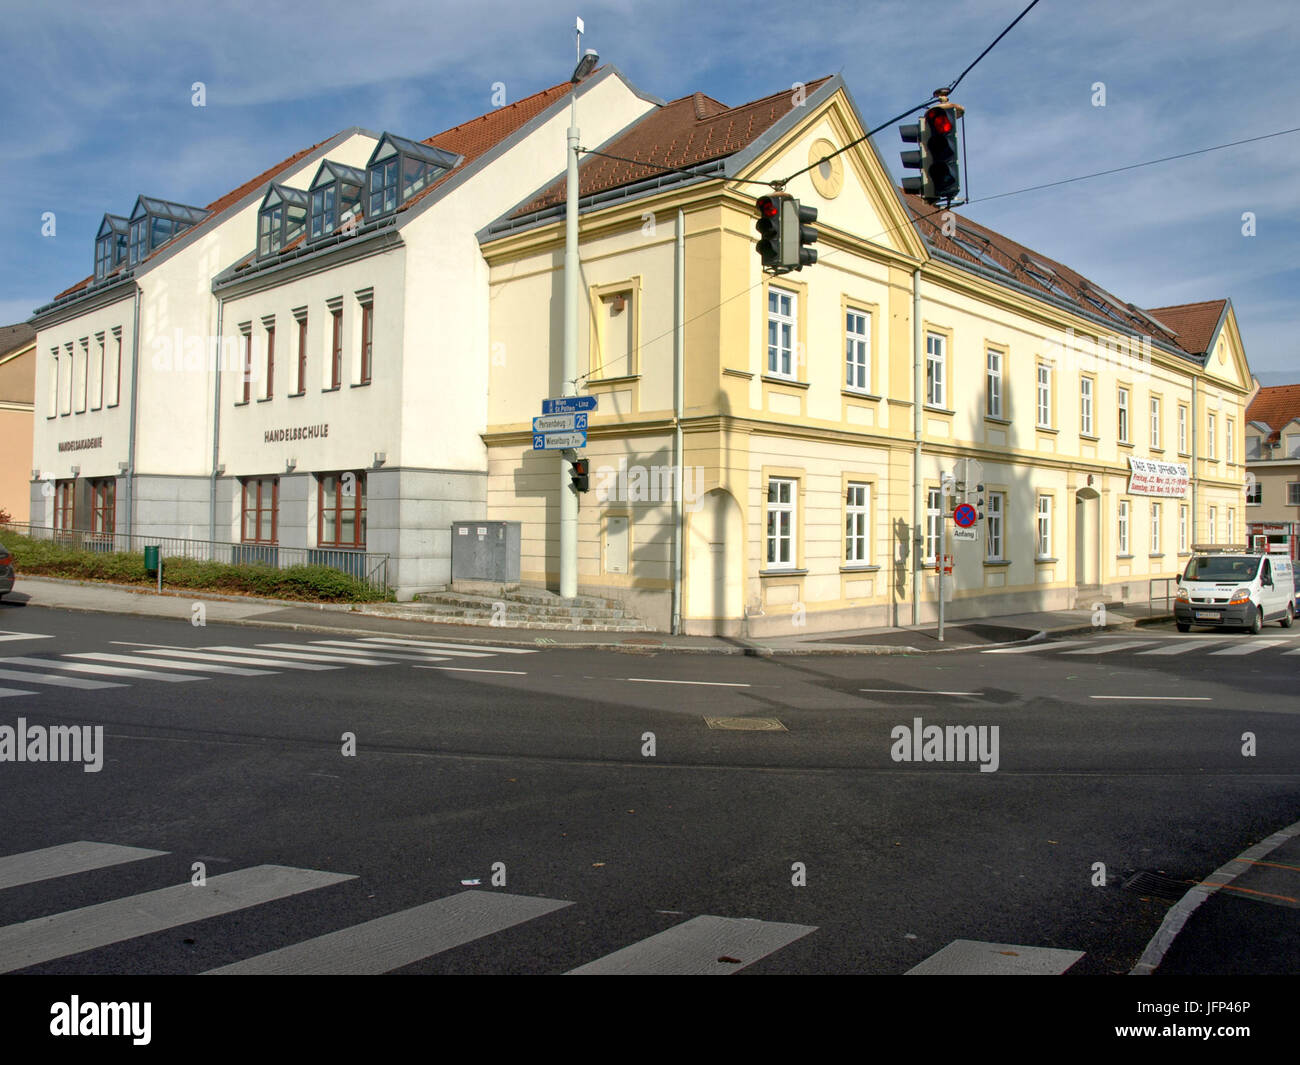 2013.10.21 - Ybbs an der Donau - Schule, ehem. Bad Vöslau - 01 Banque D'Images